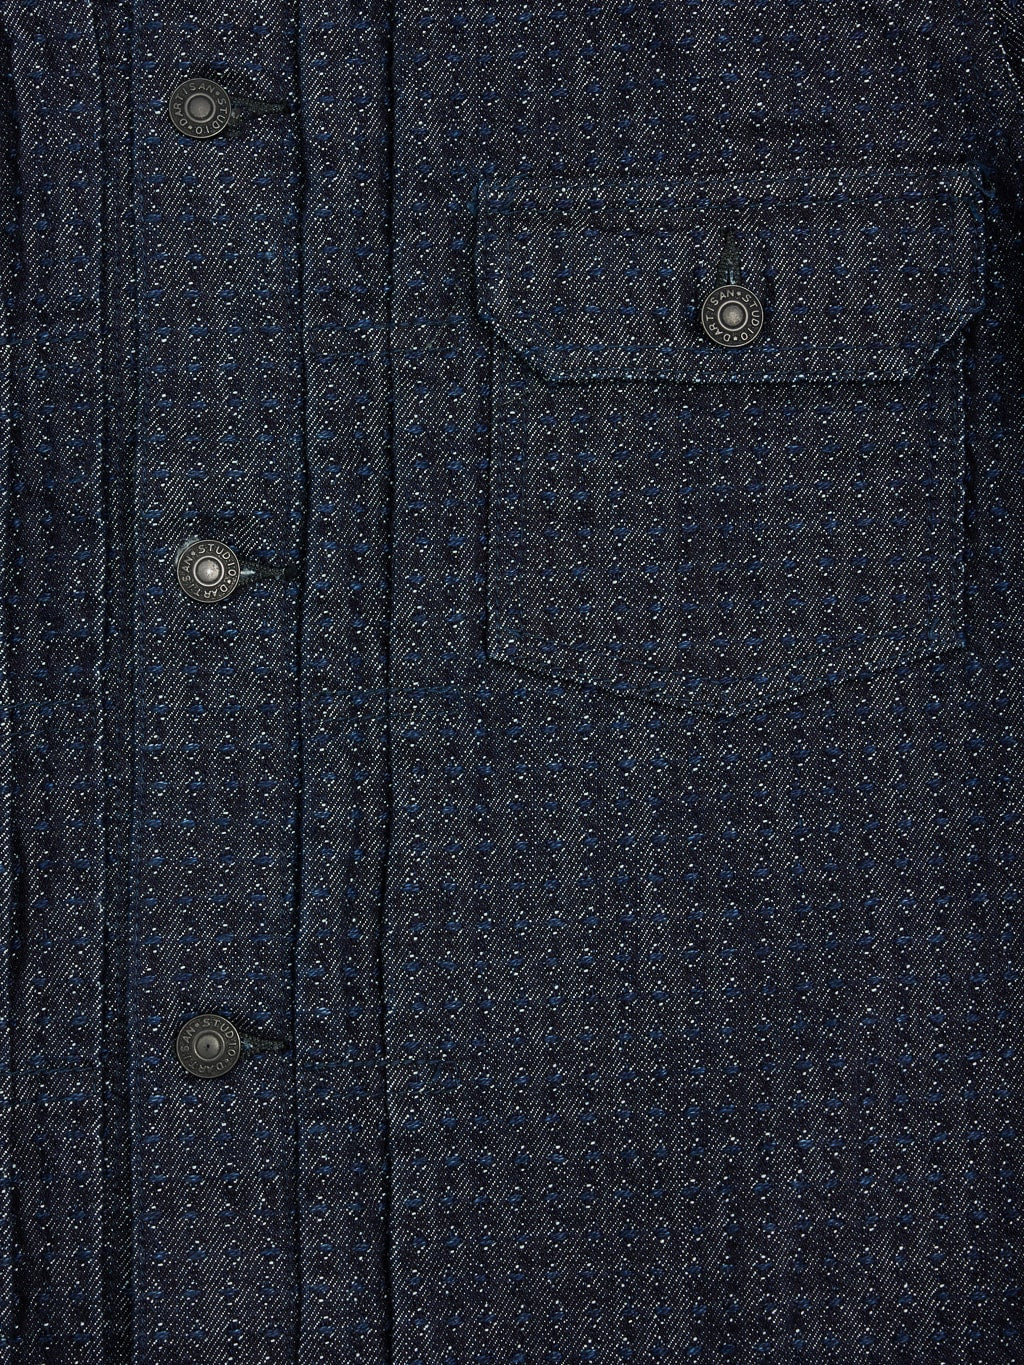 Studio D Artisan Sashiko Denim Type II Indigo Jacket chest detail